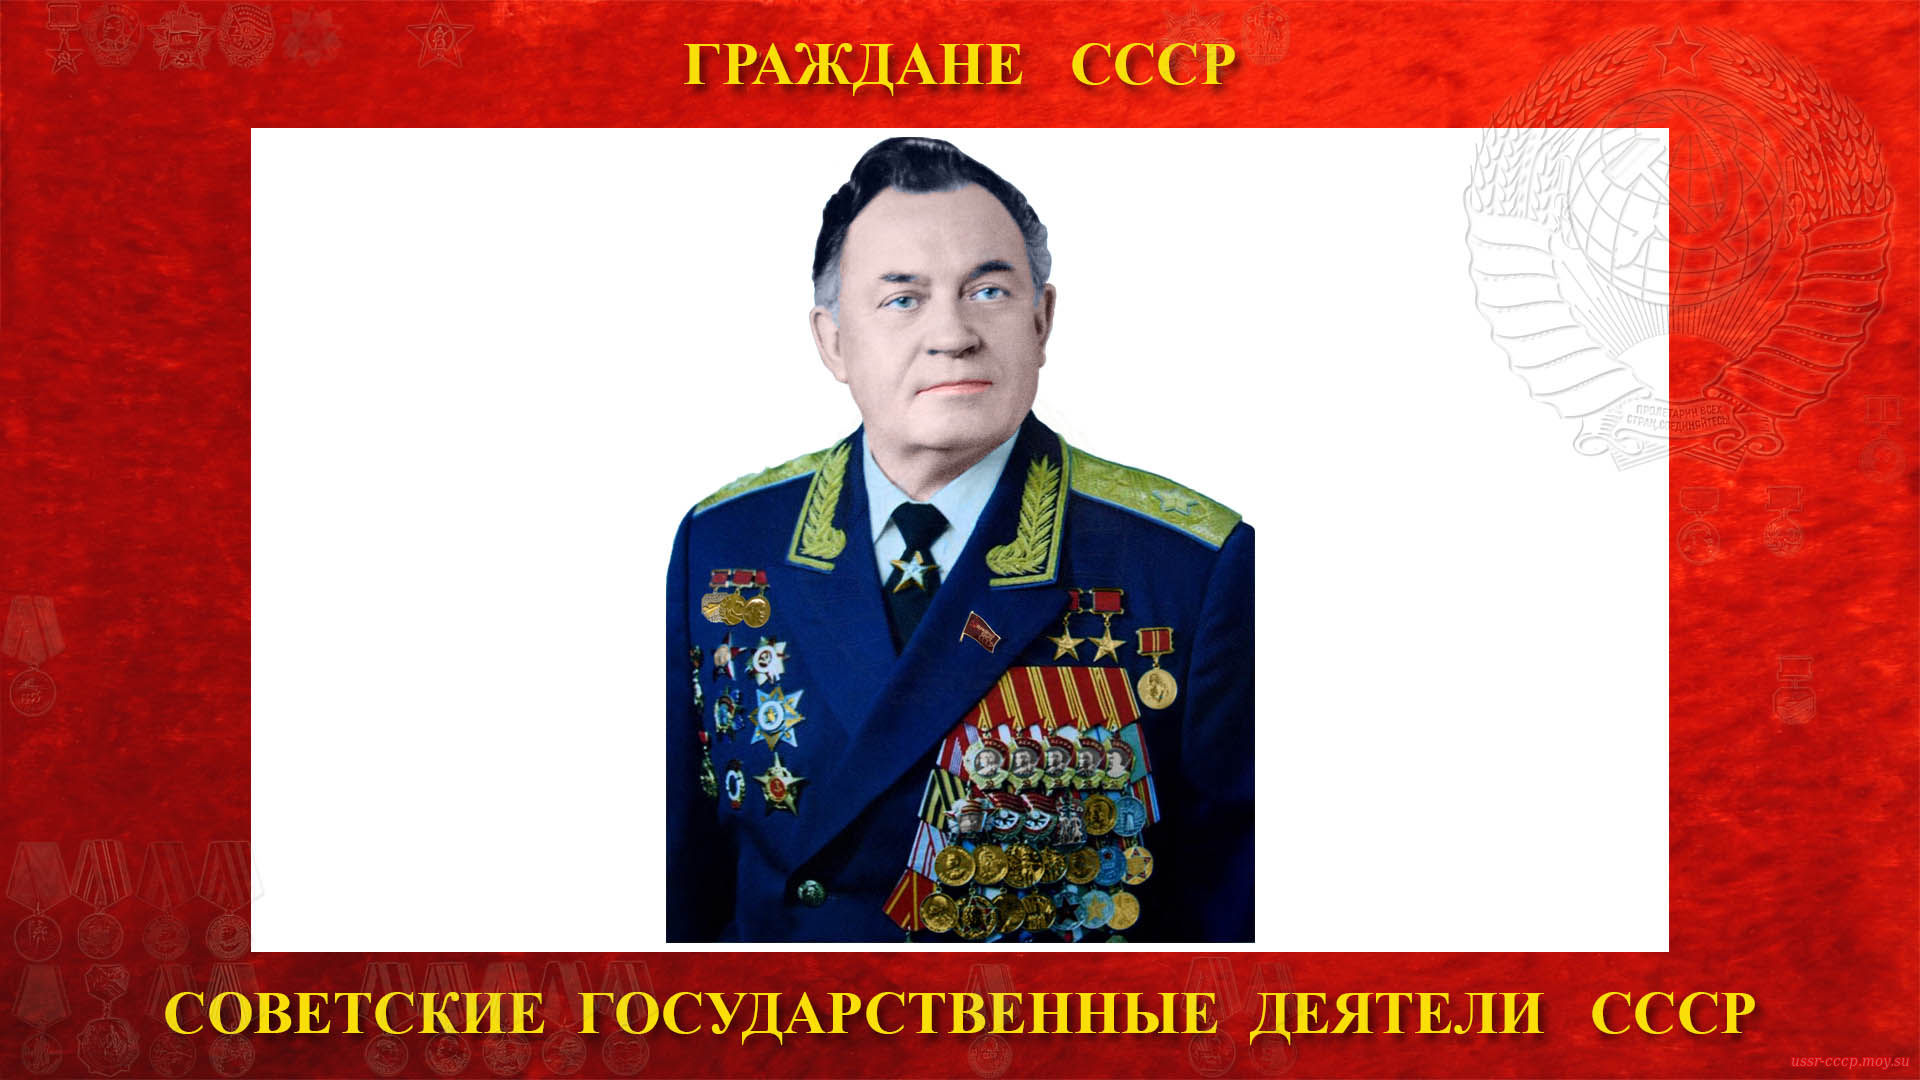 Бугаев Борис Павлович (биография)